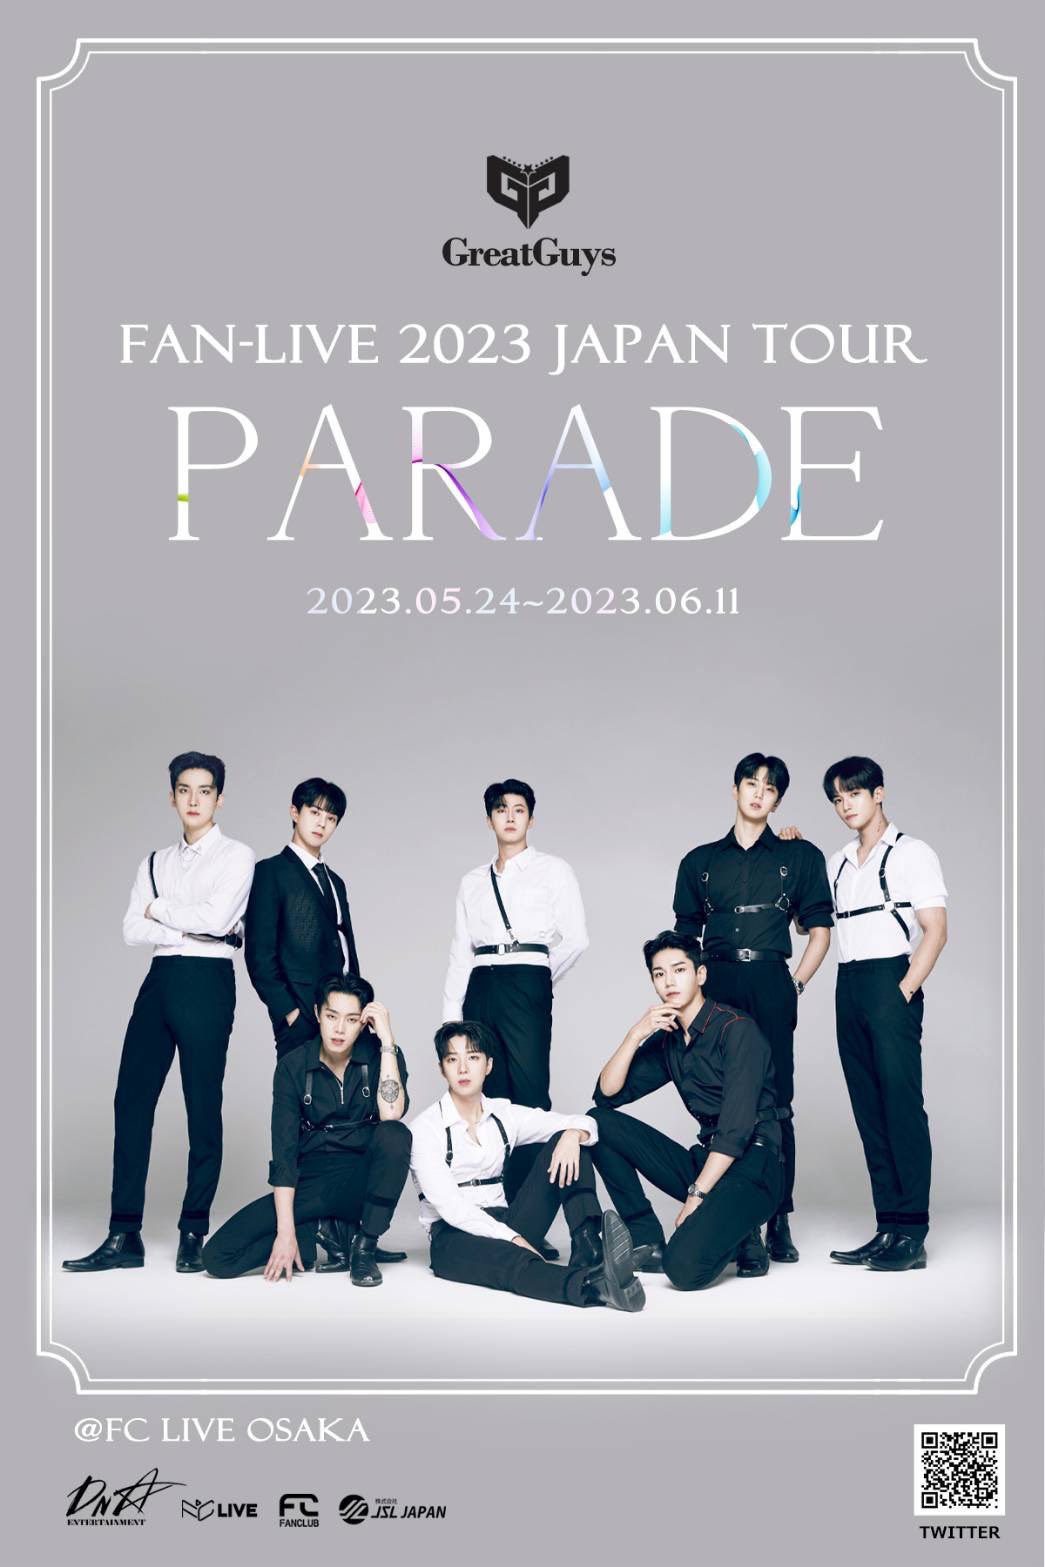 GreatGuys FANｰLIVE 2023 JAPAN TOUR PARADE ※無料イベント